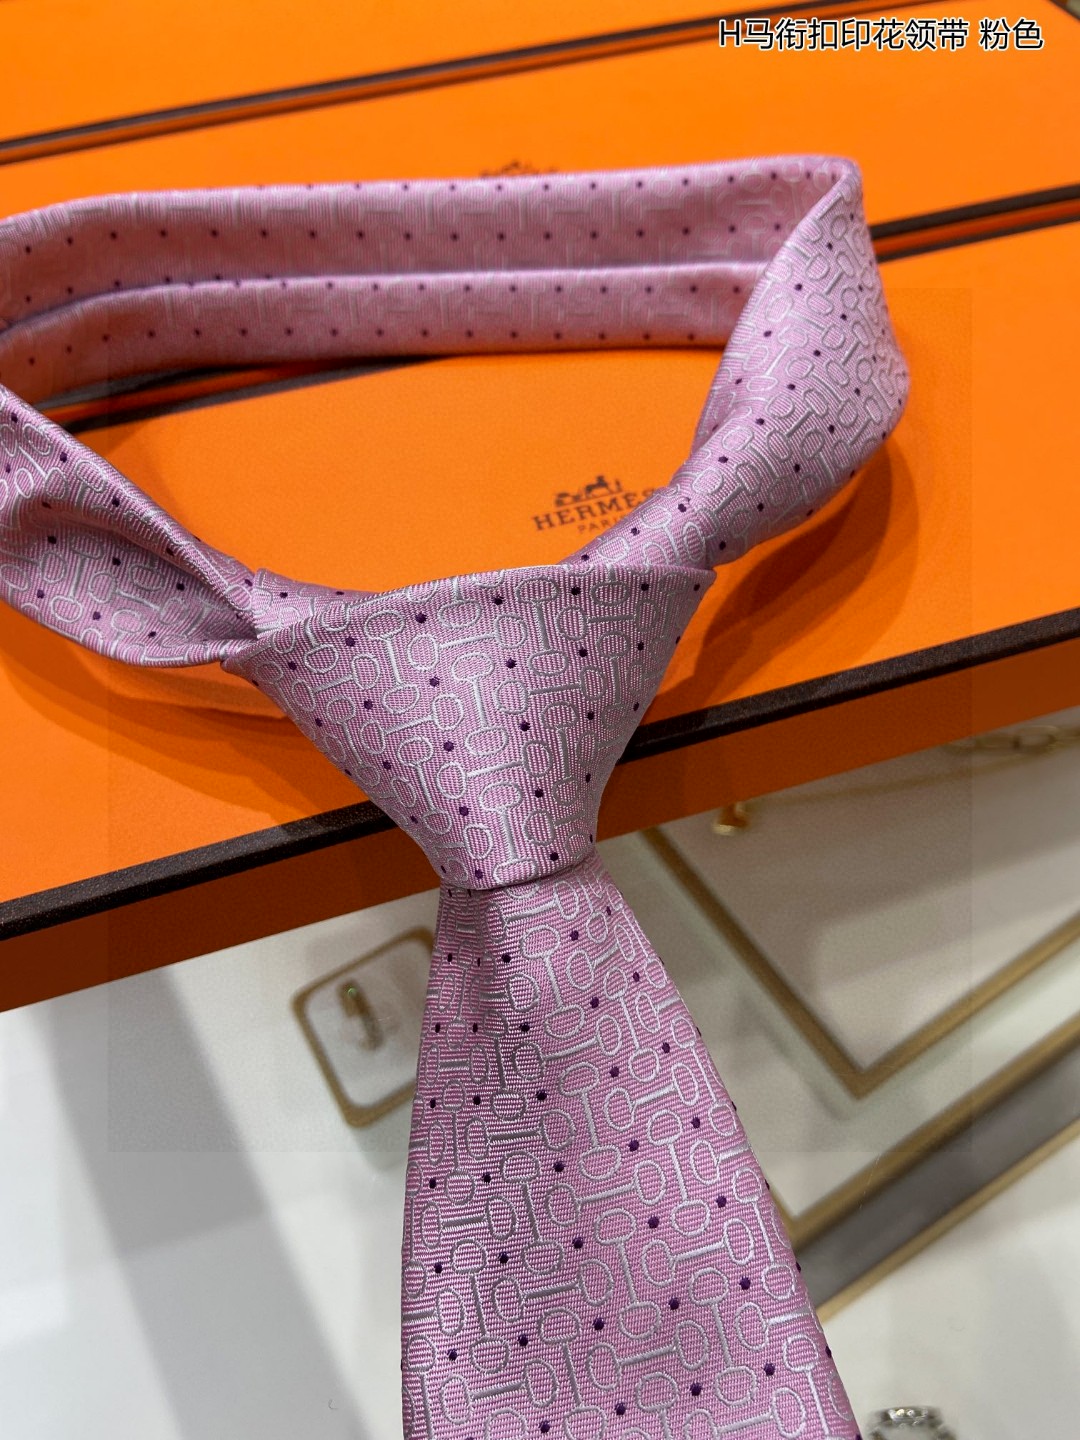 男士新款领带系列H马衔扣印花领带稀有